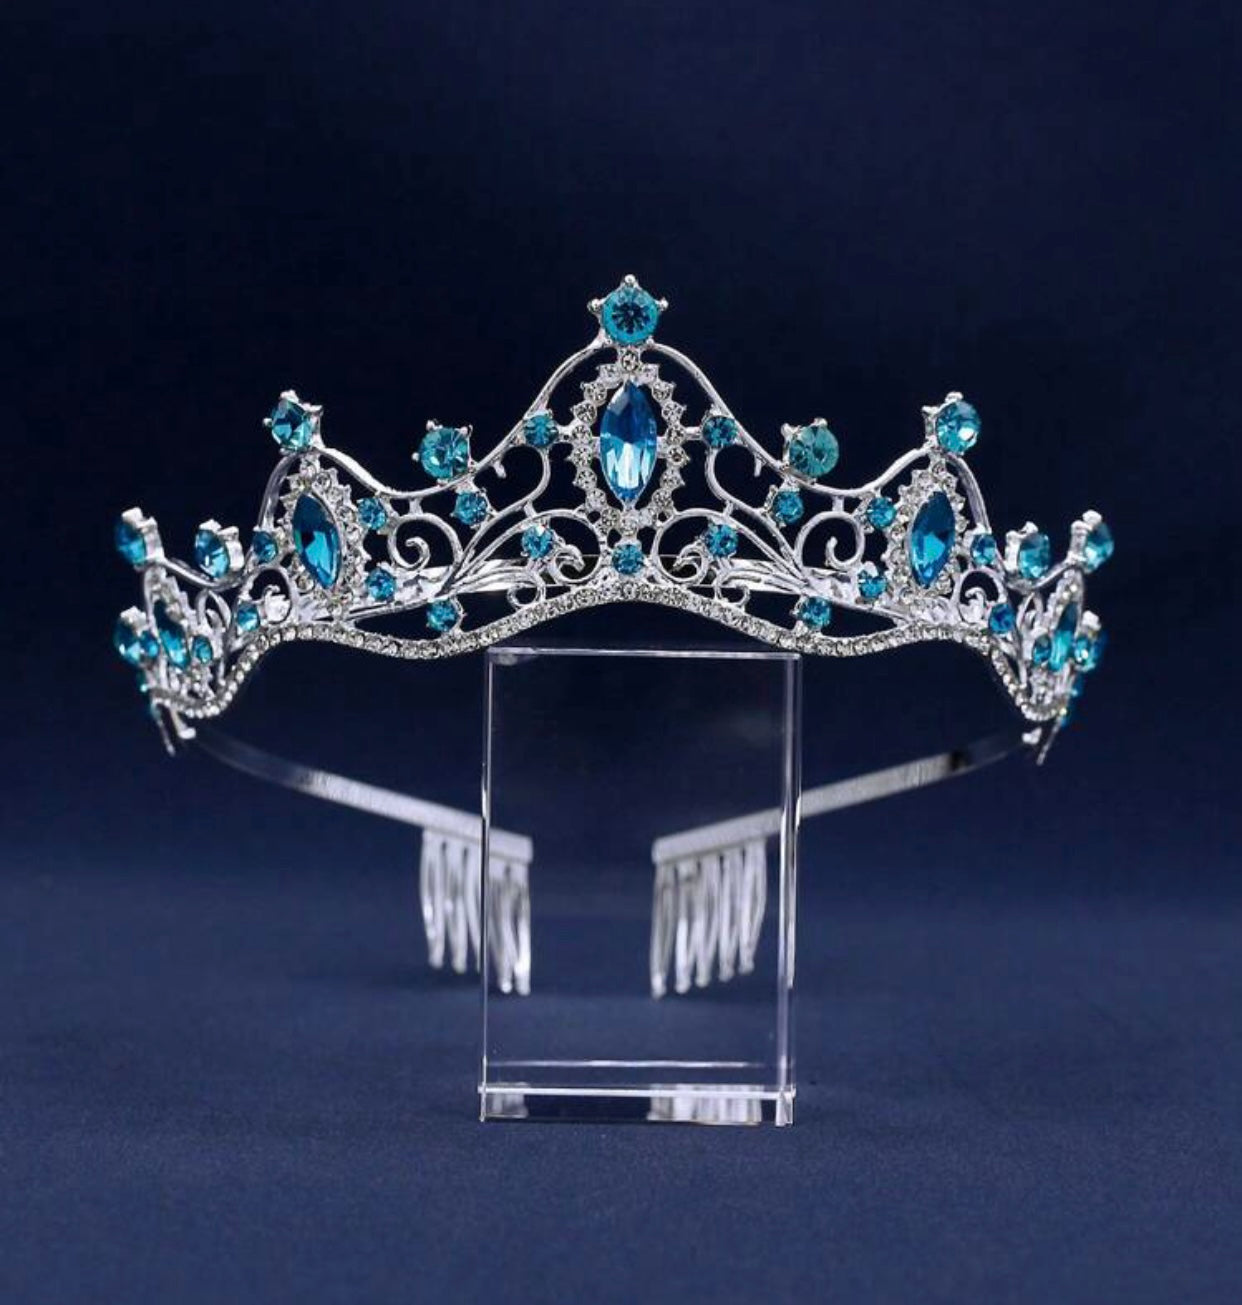 Turquoise Rhinestone Tiara, Crown, Prom, Wedding, Dancing, Metal Tiara